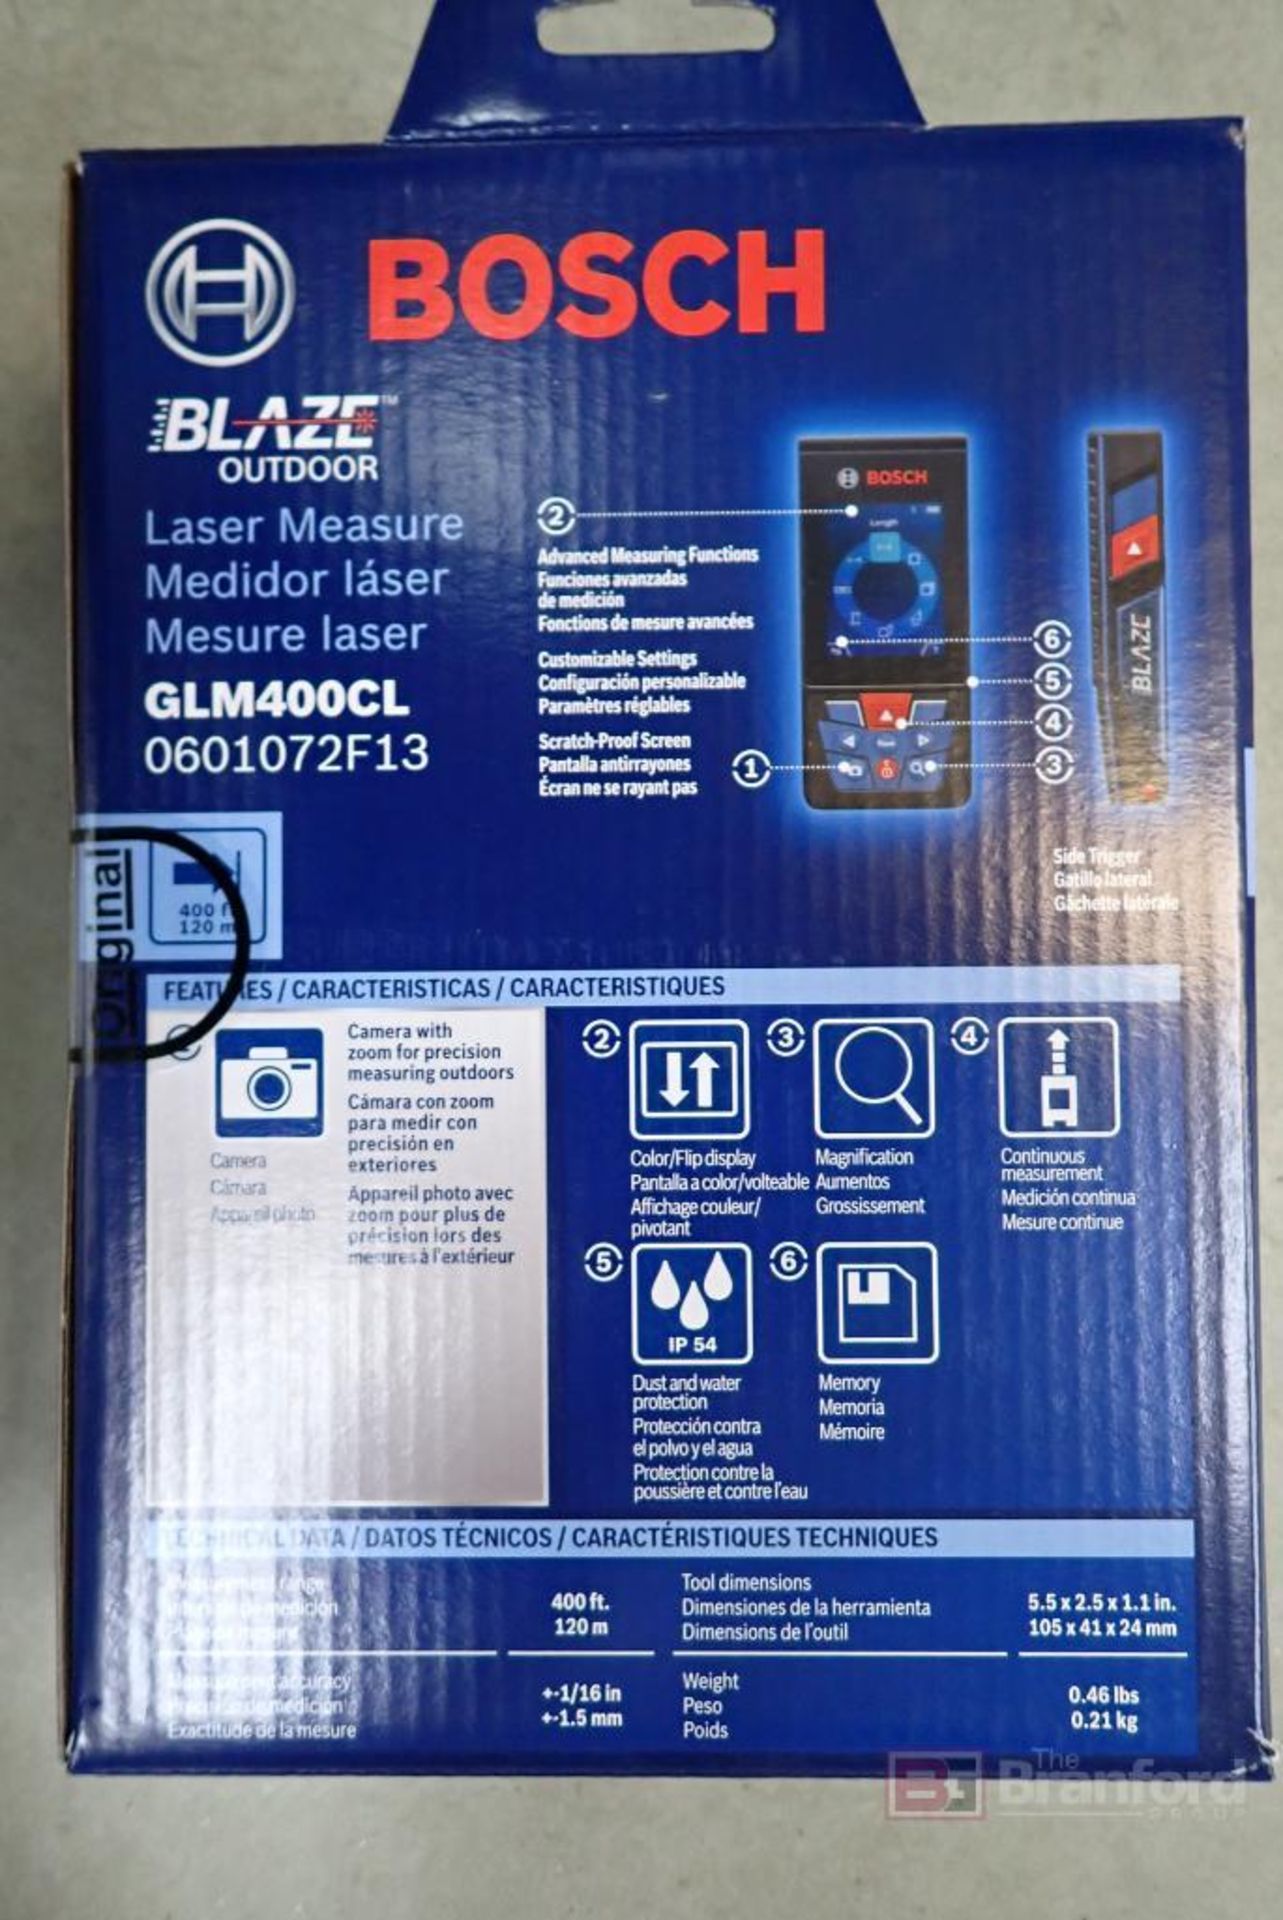 Bosch GLM400CL Blaze Outdoor Laser Measure - Image 4 of 4